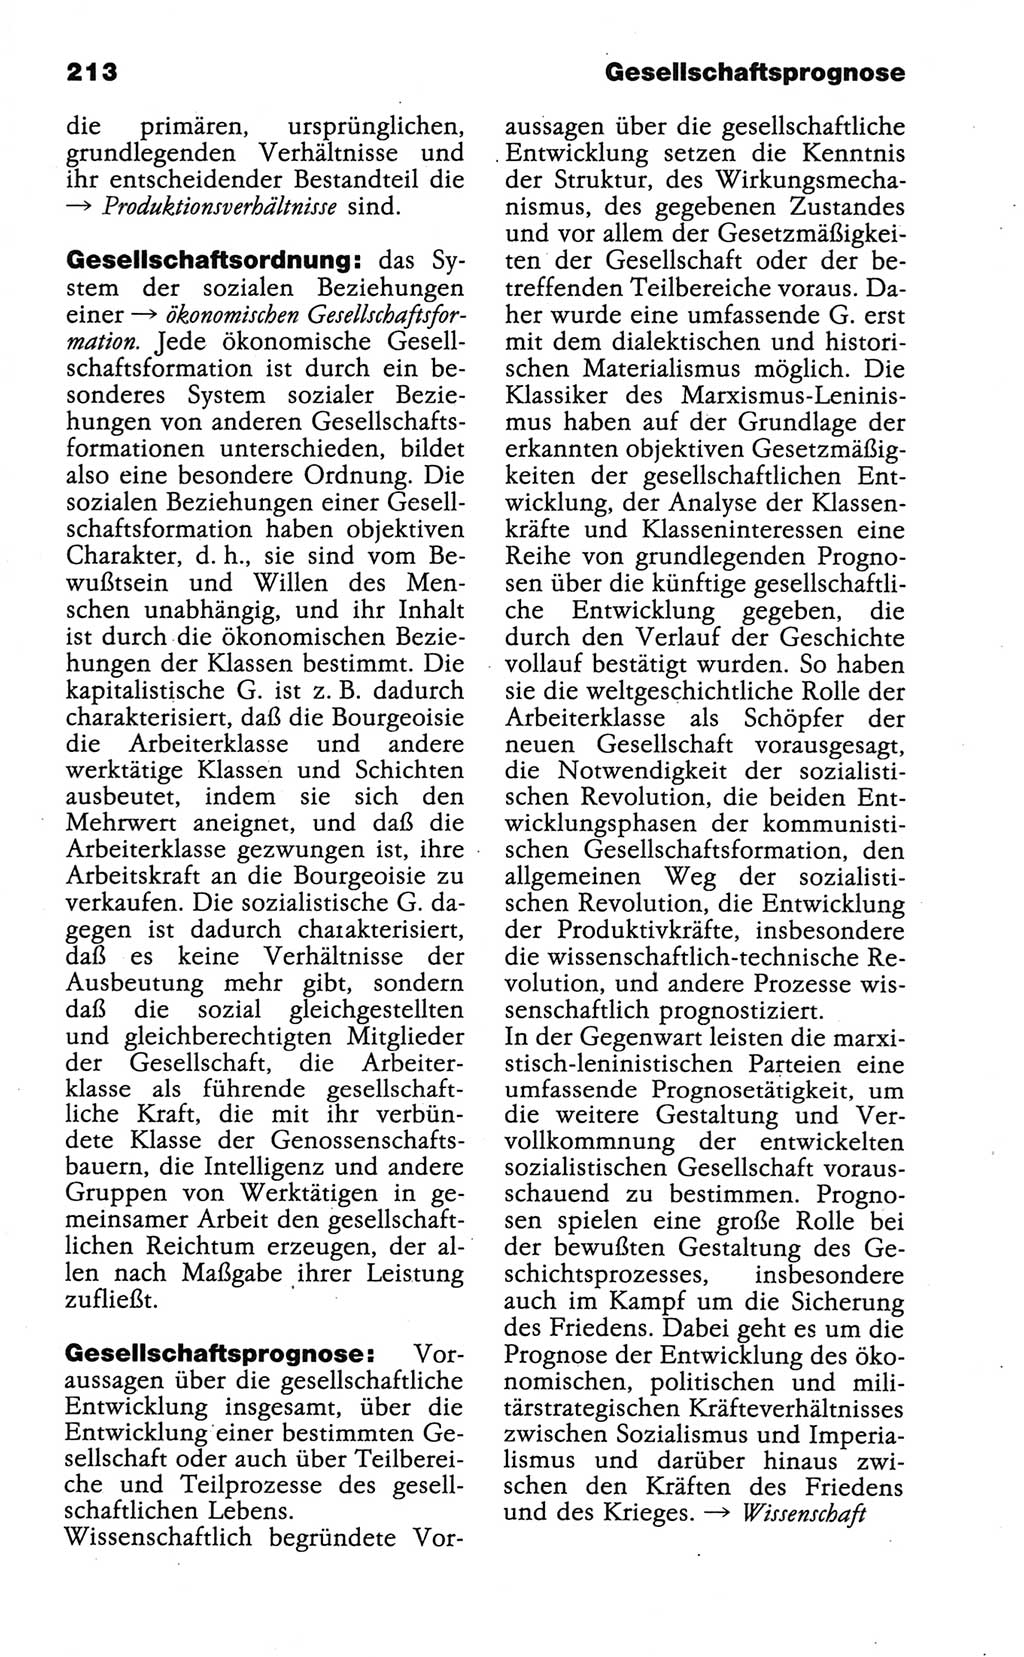 Wörterbuch der marxistisch-leninistischen Philosophie [Deutsche Demokratische Republik (DDR)] 1986, Seite 213 (Wb. ML Phil. DDR 1986, S. 213)